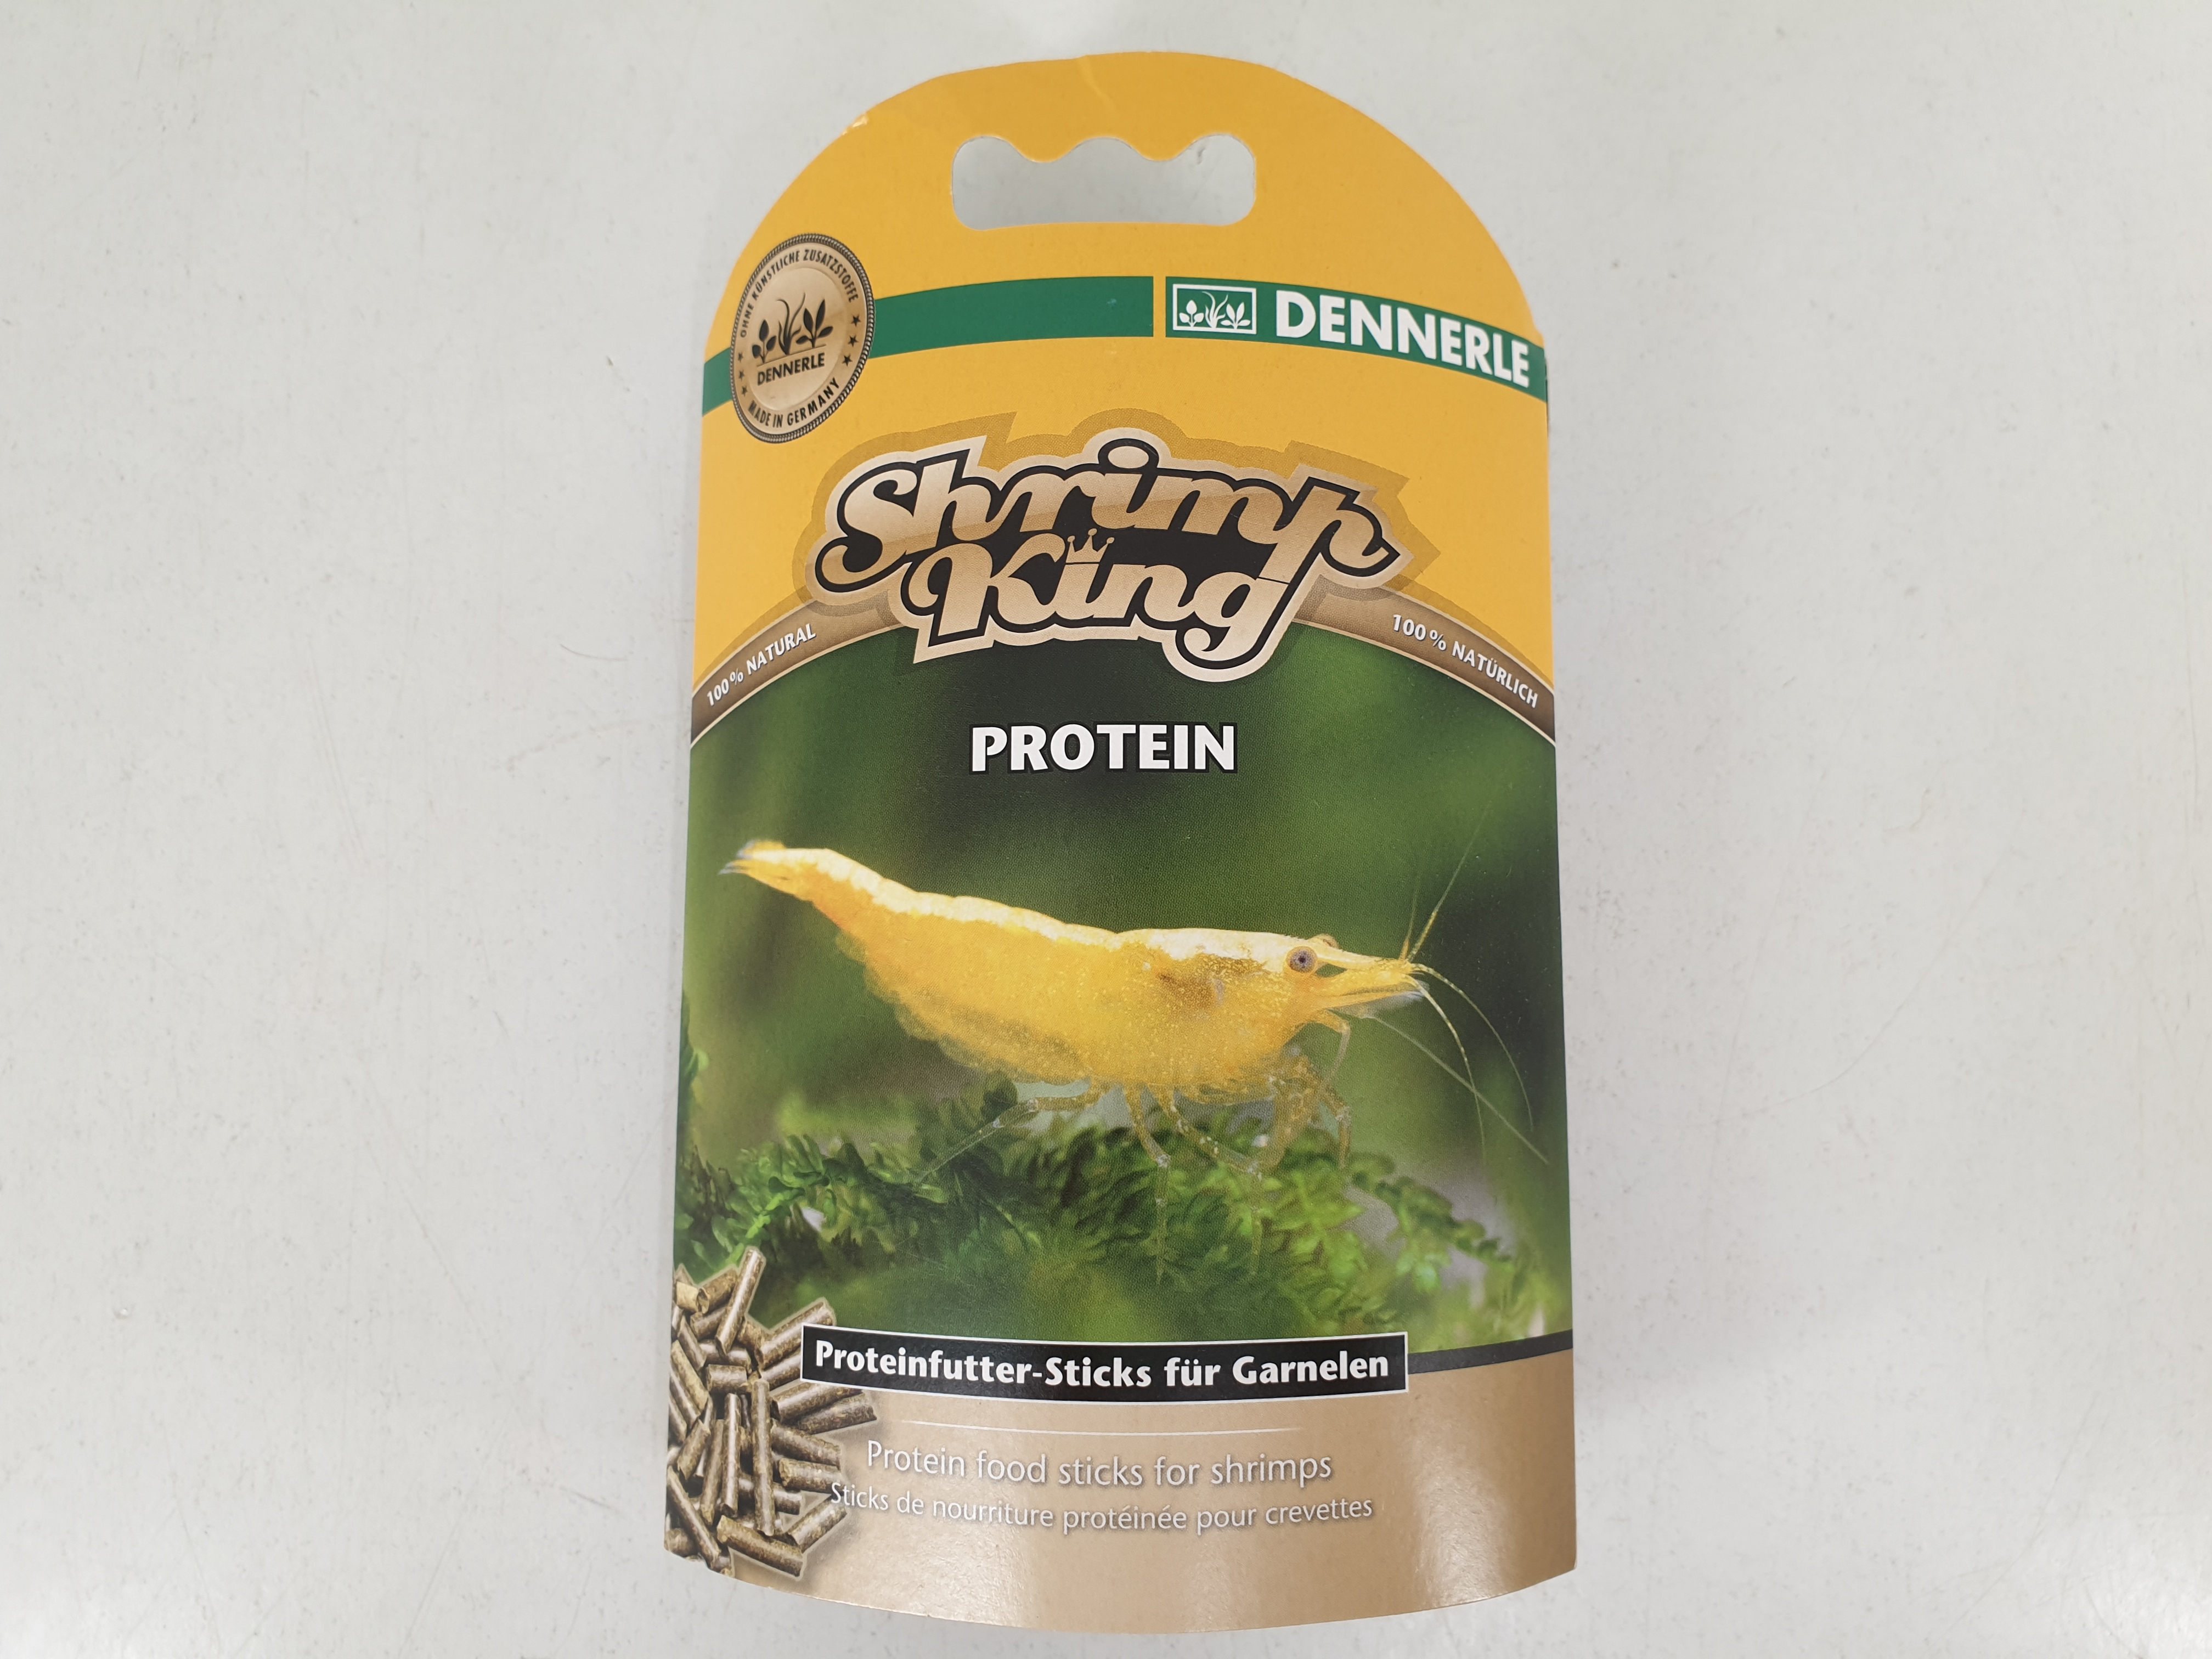 Dennerle Shrimp King Protein - Proteinfutter-Sticks für Garnelen 45g